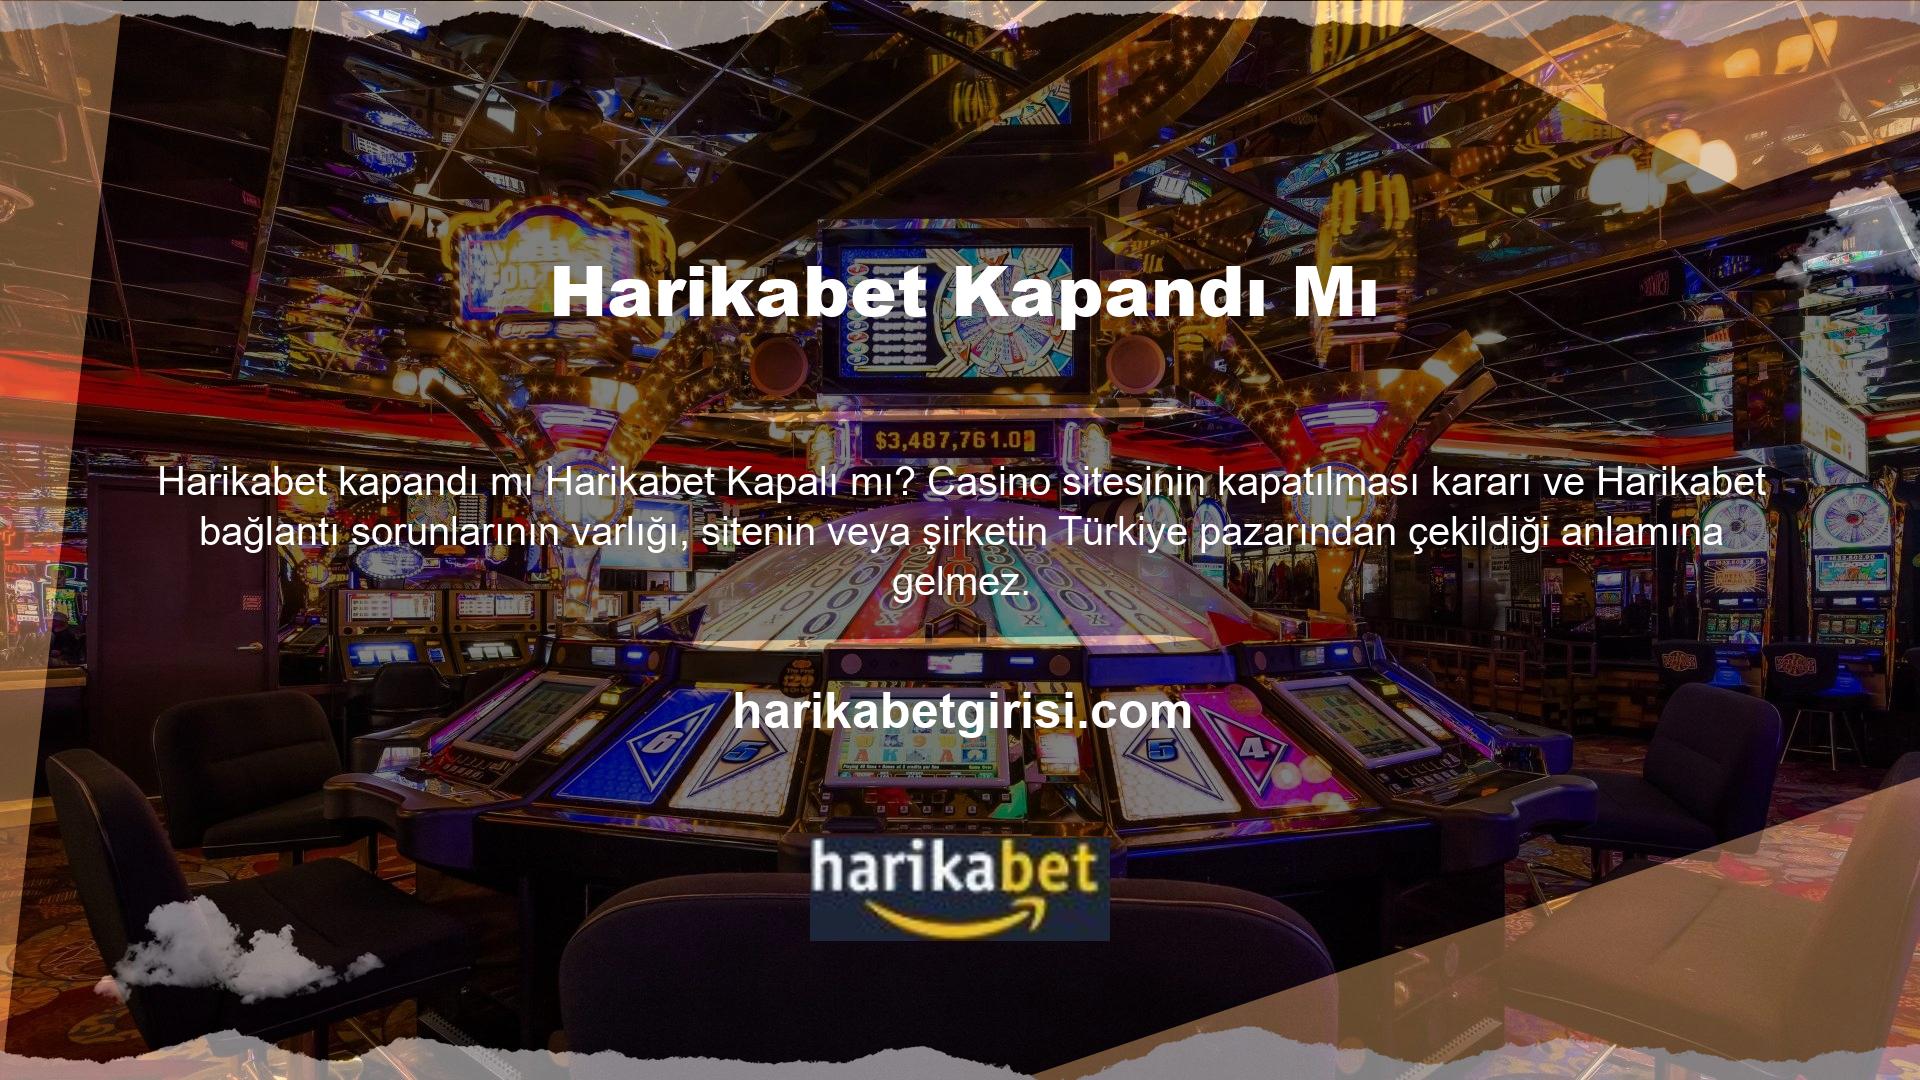 Türkiye'nin casino para biriminin büyüklüğü ve Türkiye'nin casino para biriminin büyüklüğü borsada işlem gören şirketlerin dikkatini çekti